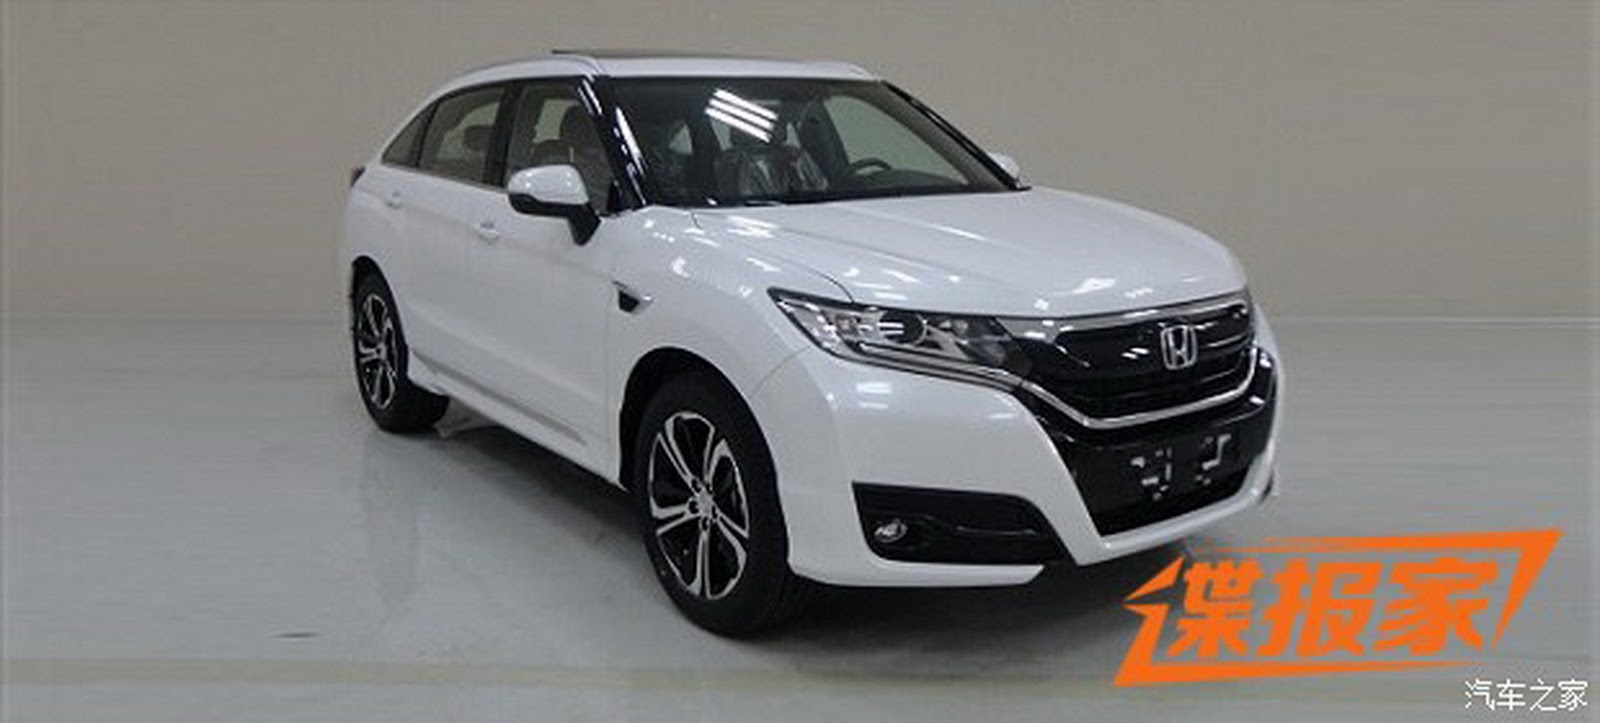 “بالصور” شاهد “هوندا” UR-V إس يو في الجديدة للسوق الصينية Honda